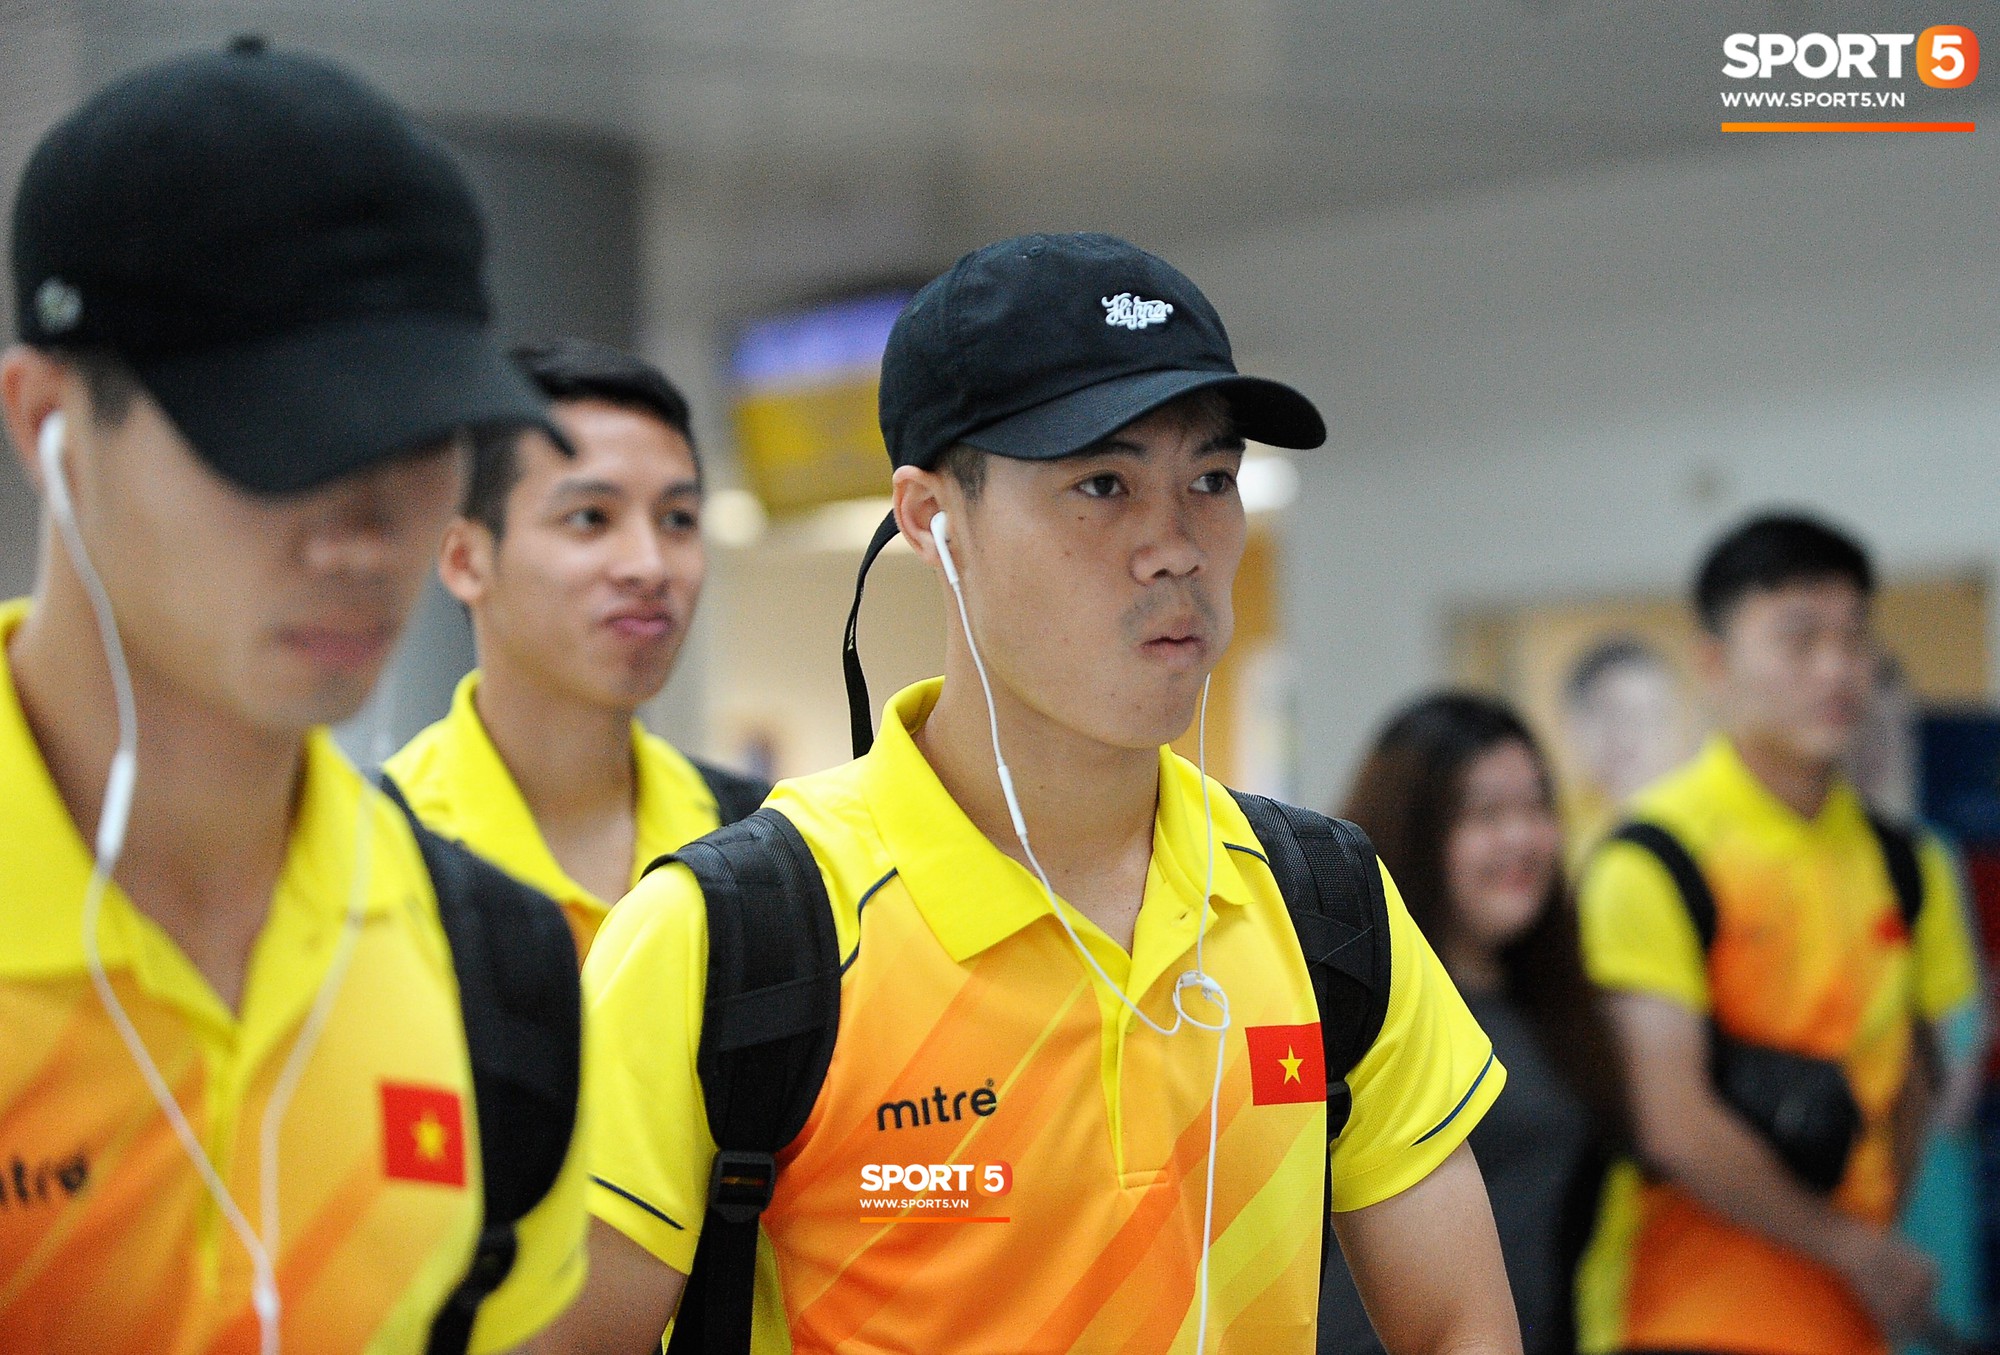 Những phụ kiện không thể tách rời các cầu thủ Olympic Việt Nam ở sân bay - Ảnh 5.